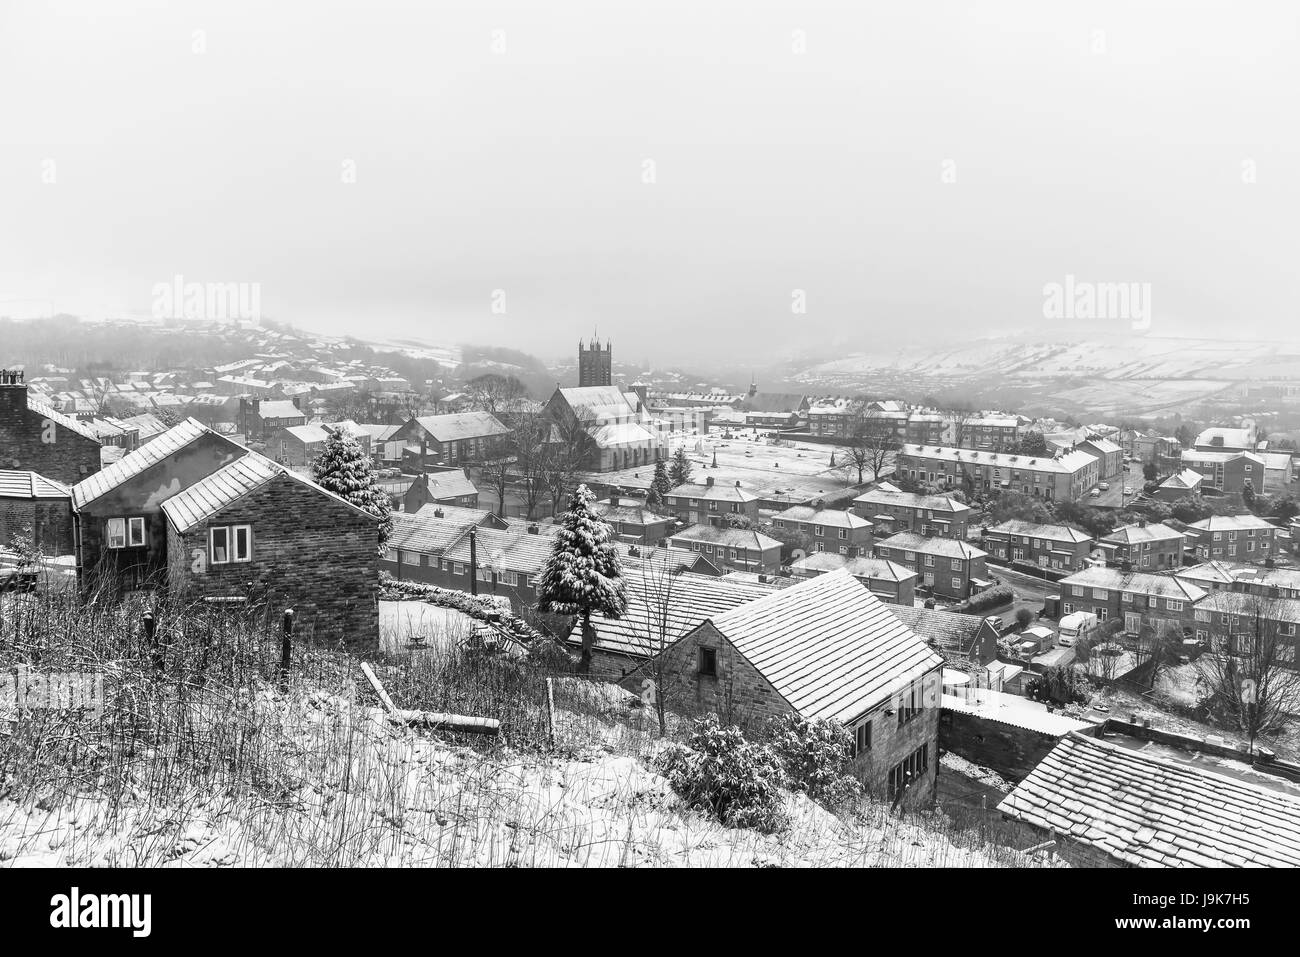 Mossley un village de Greater Manchester couvert de neige en hiver britannique. Banque D'Images